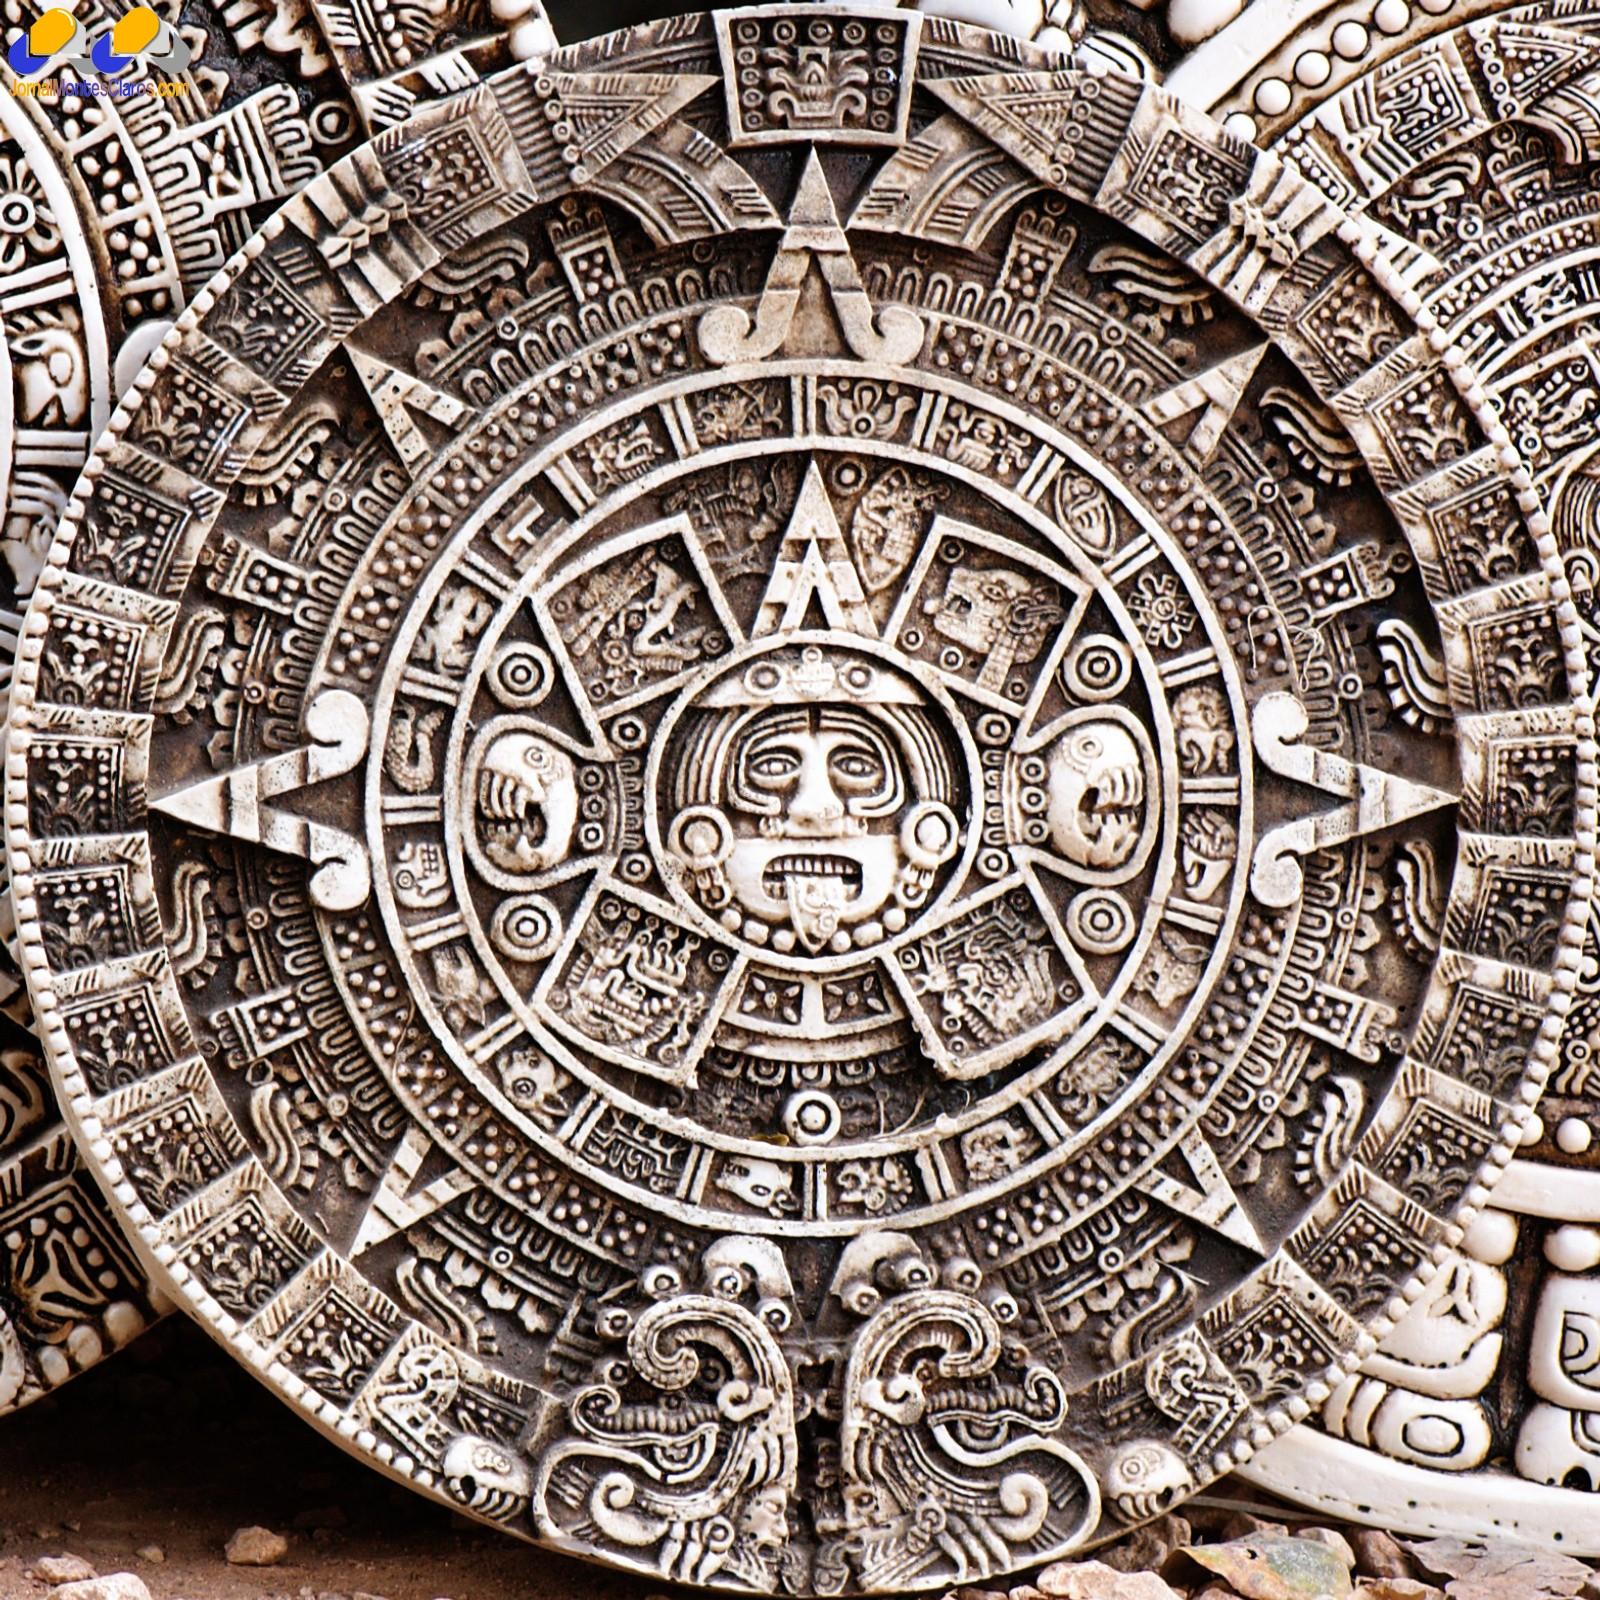 Calendário maia saiba a sua origem e descubra como ele funciona